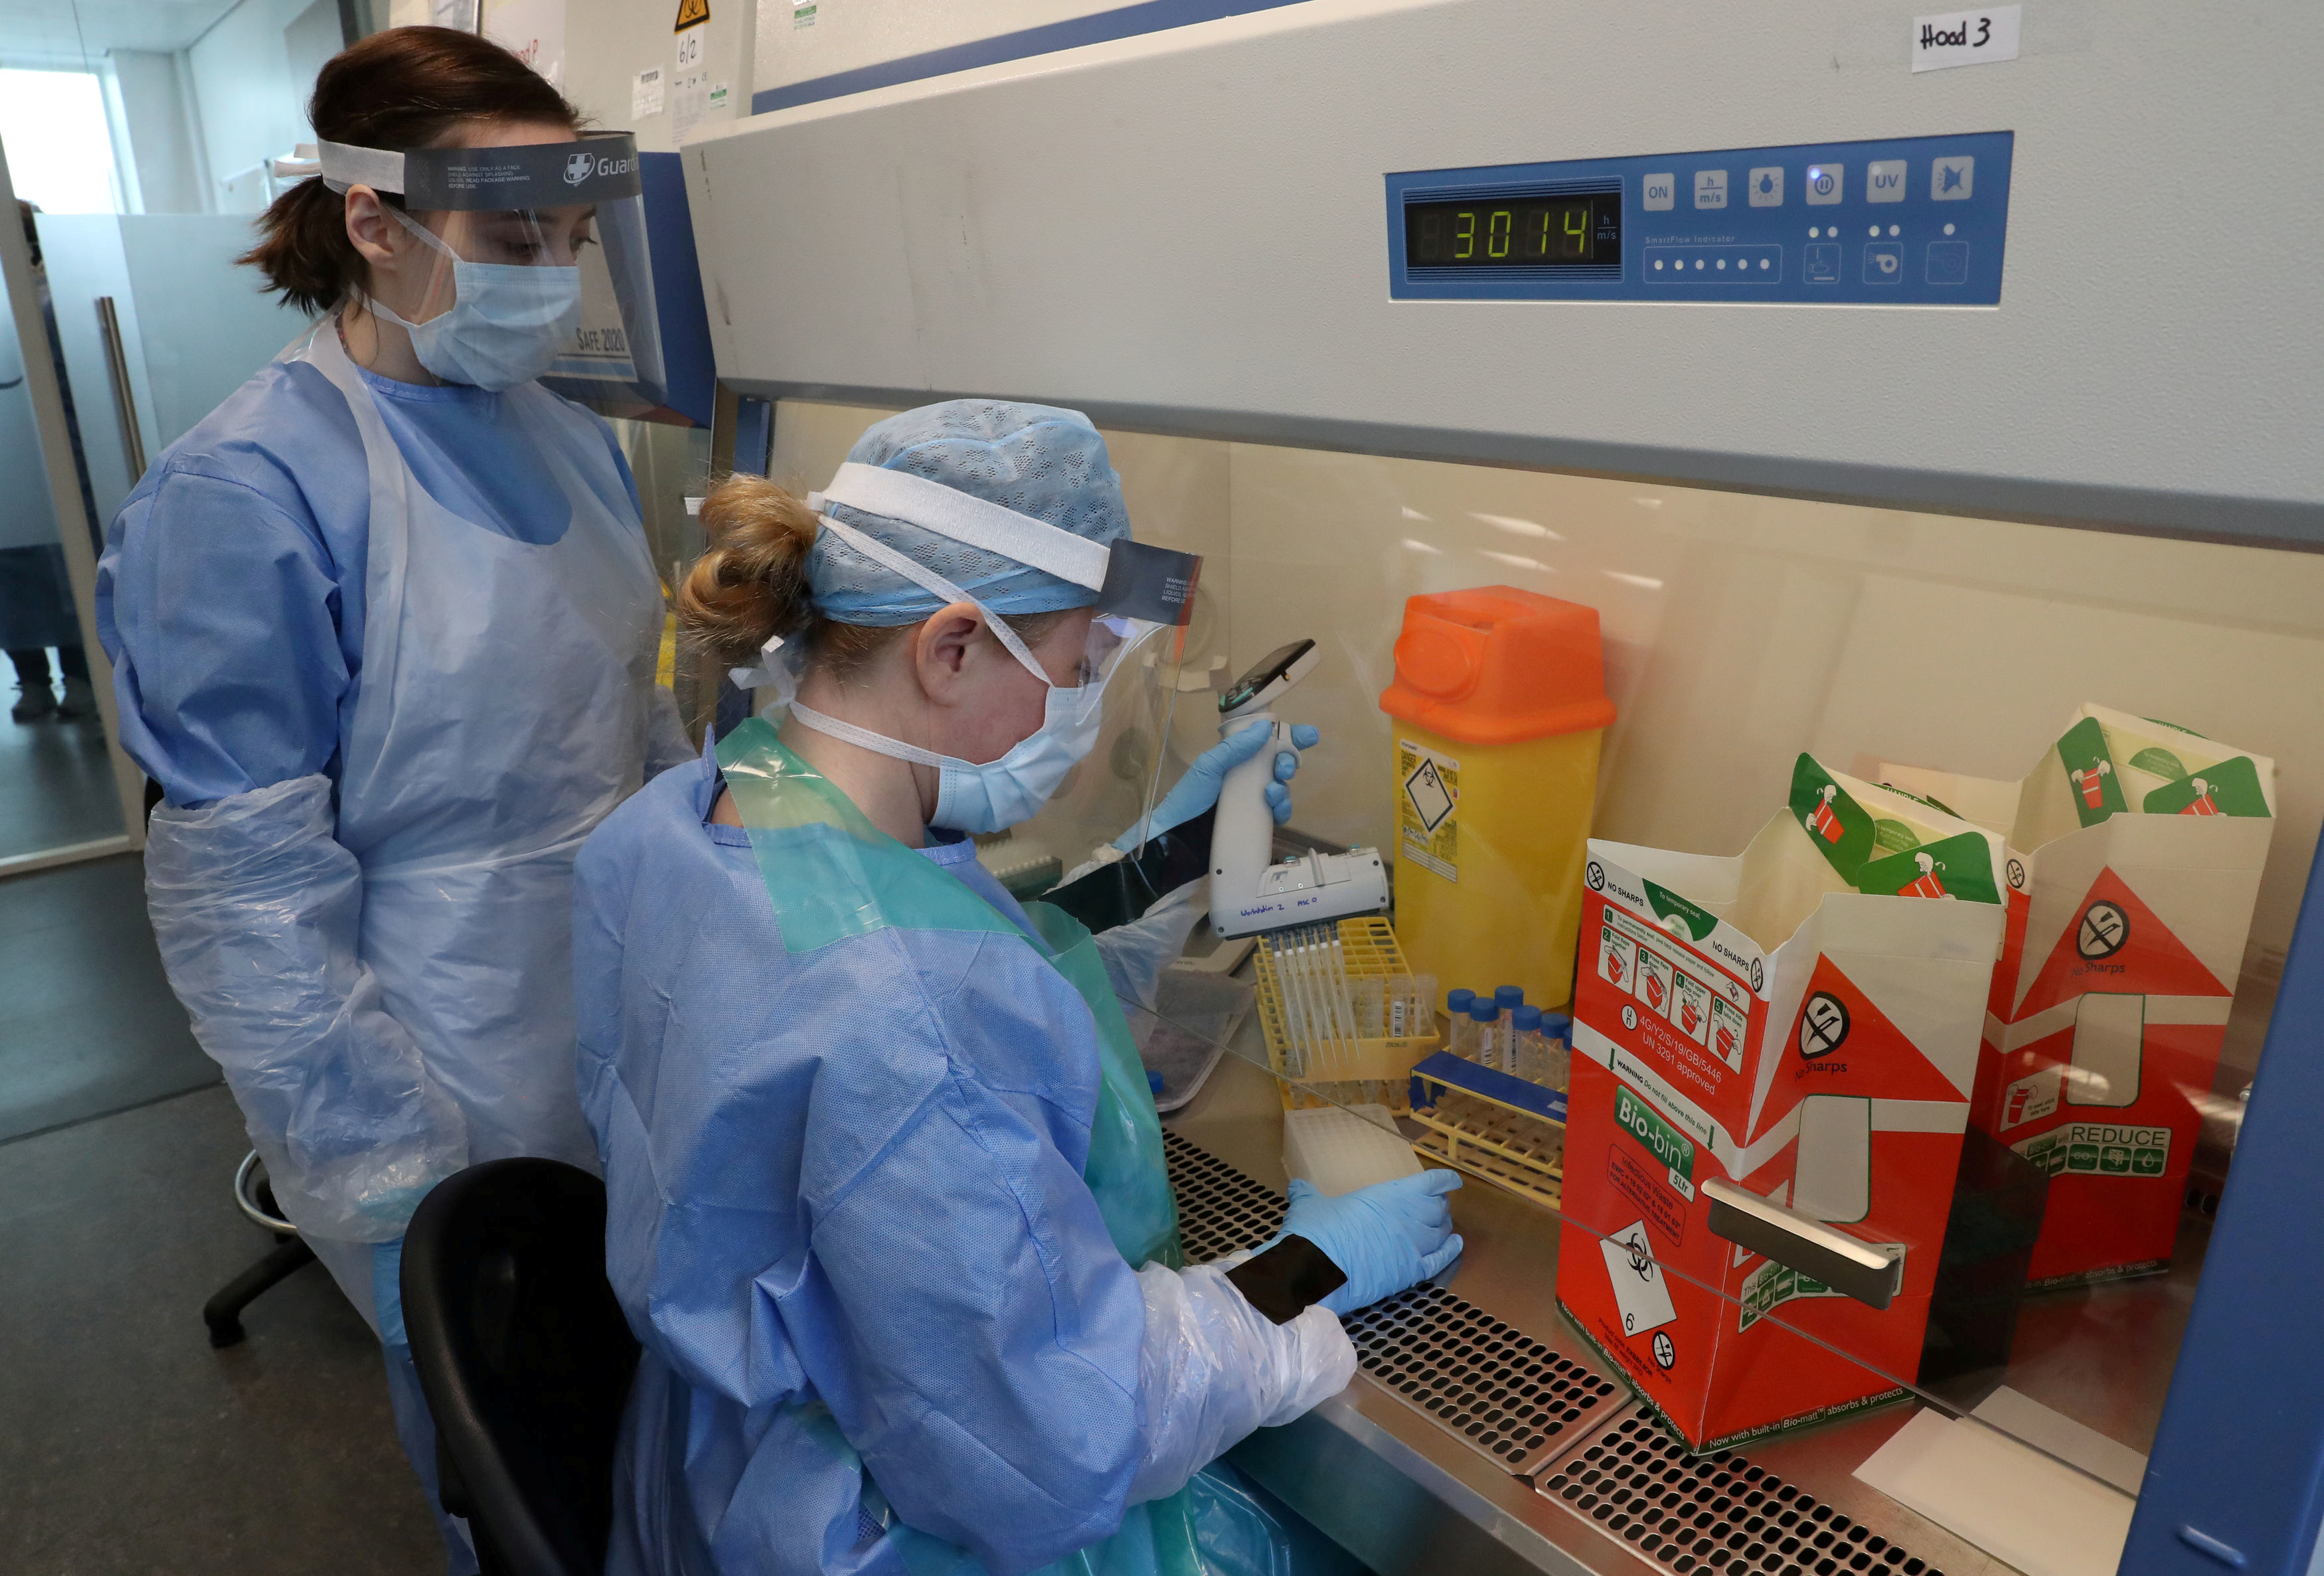 Técnicos laboratoristas llevan a cabo una transferencia de muestra durante la apertura del nuevo laboratorio de pruebas COVID-19, en medio de la epidemia de la enfermedad por coronavirus, en el Queen Elizabeth University Hospital, en Glasgow, Gran Bretaña (Reuters)